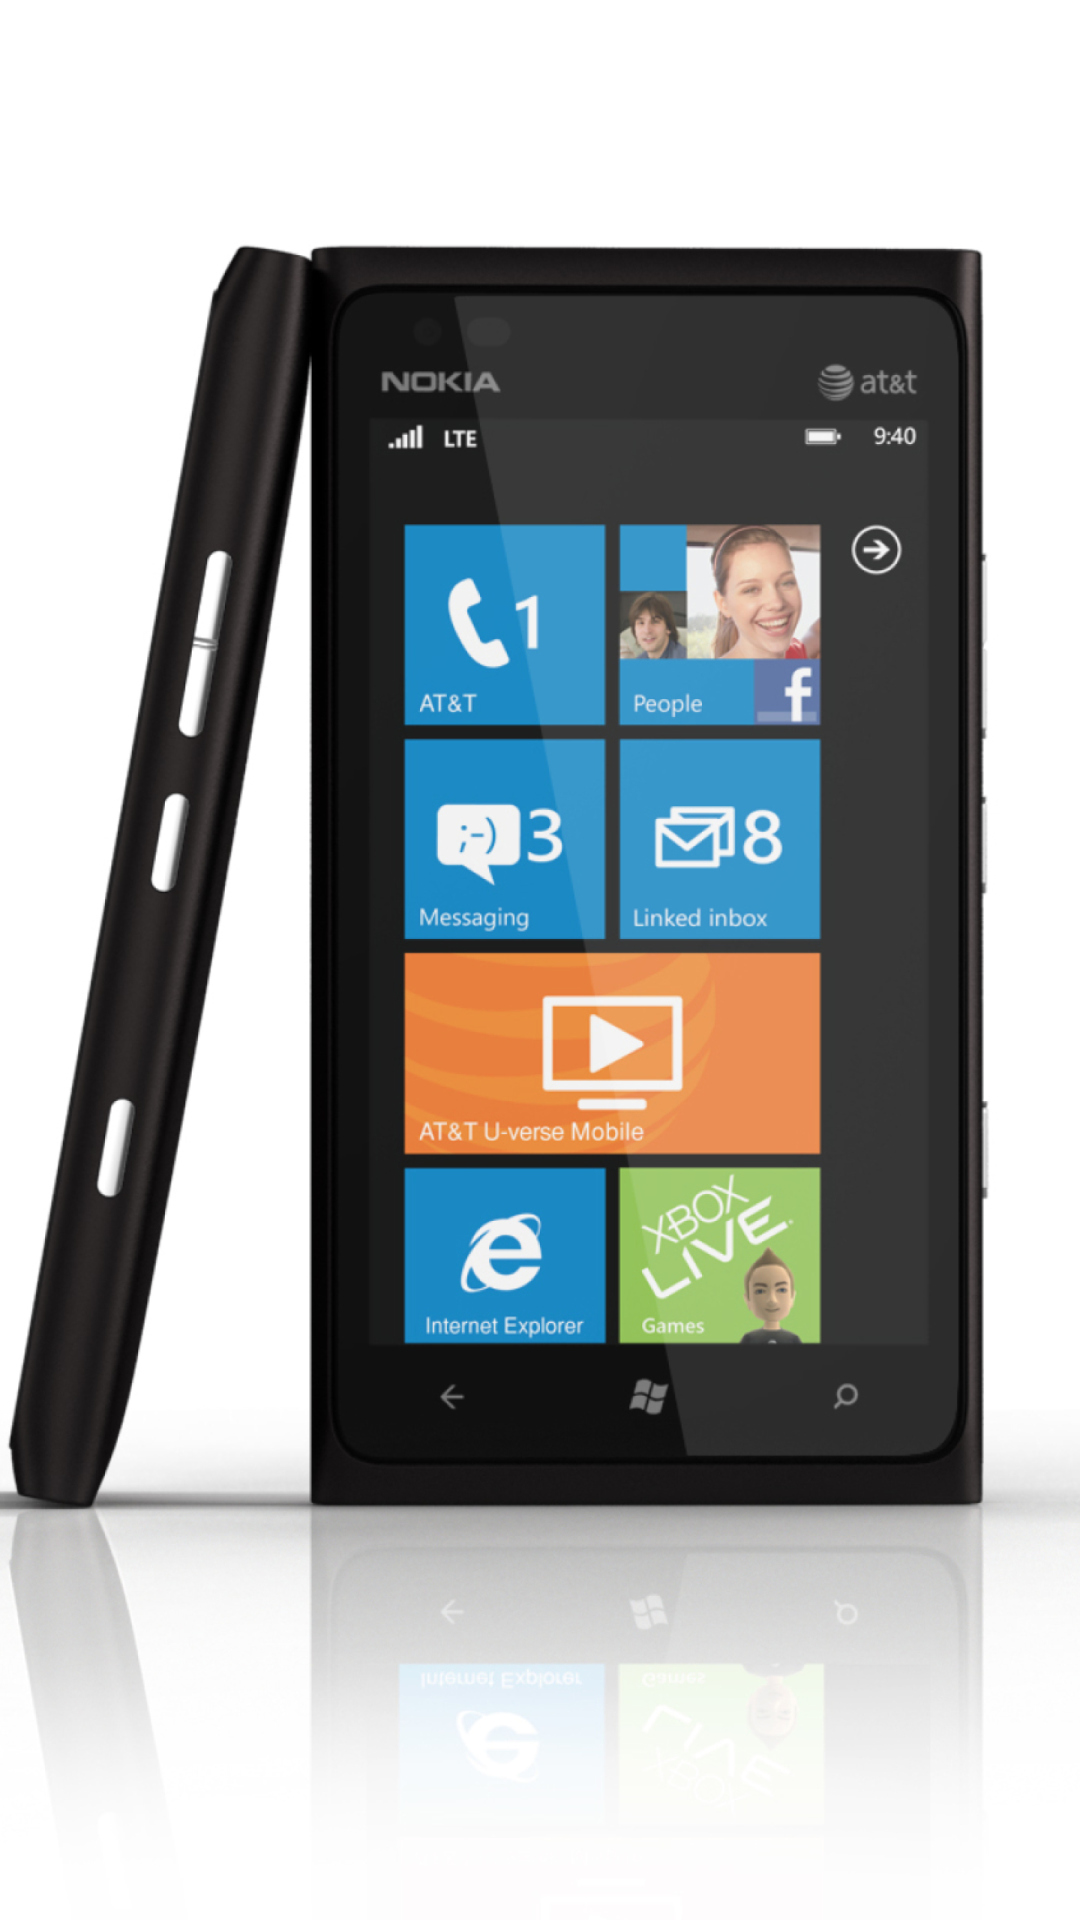 Sfondi Windows Phone Nokia Lumia 900 1080x1920